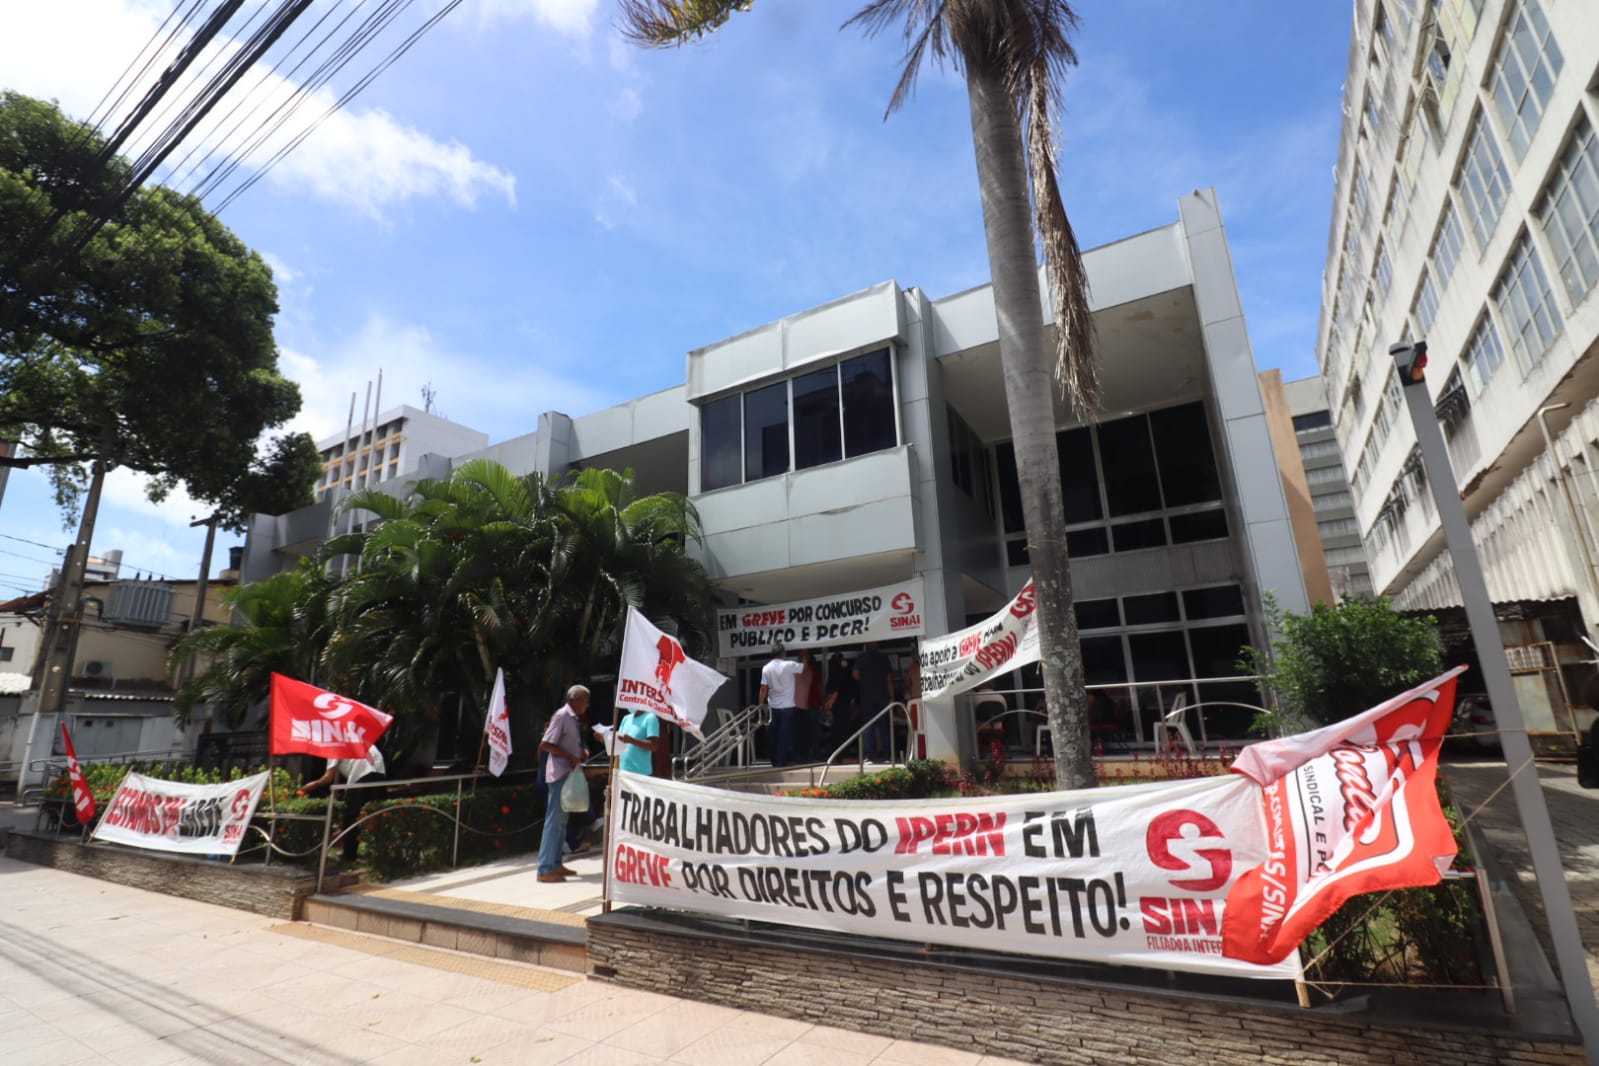 Servidores em greve aprovam moção de repúdio ao controlador geral do Governo Fátima: "desrespeitoso e ameaçador"